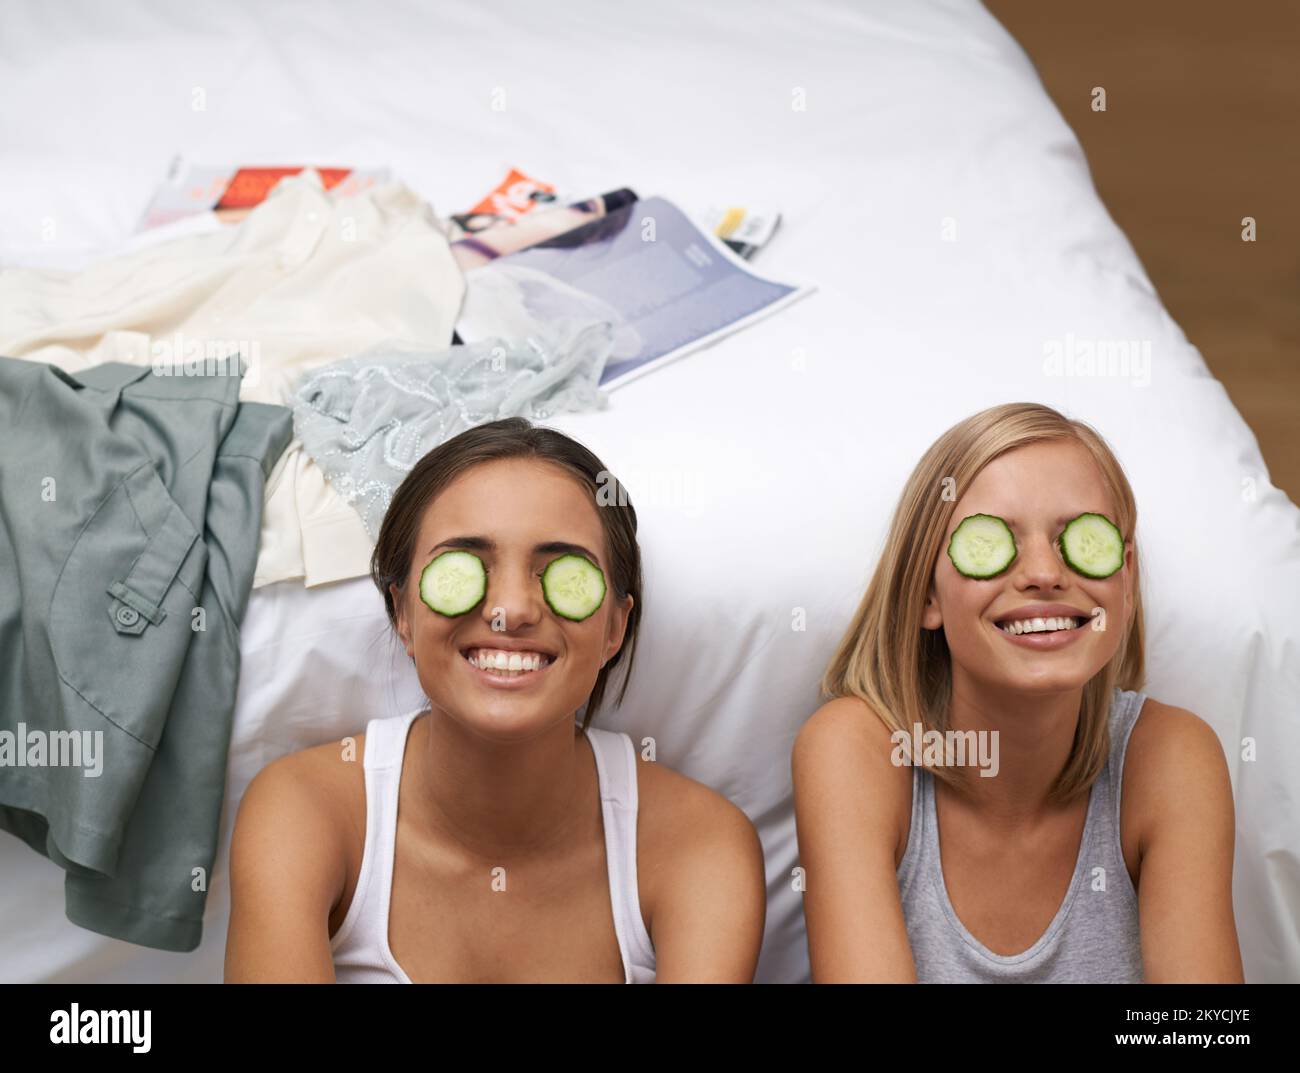 Mantener a su juventud con un poco de ayuda de Productos Naturales. Dos mujeres jóvenes mimándose a sí mismas en una fiesta de pijamas. Foto de stock